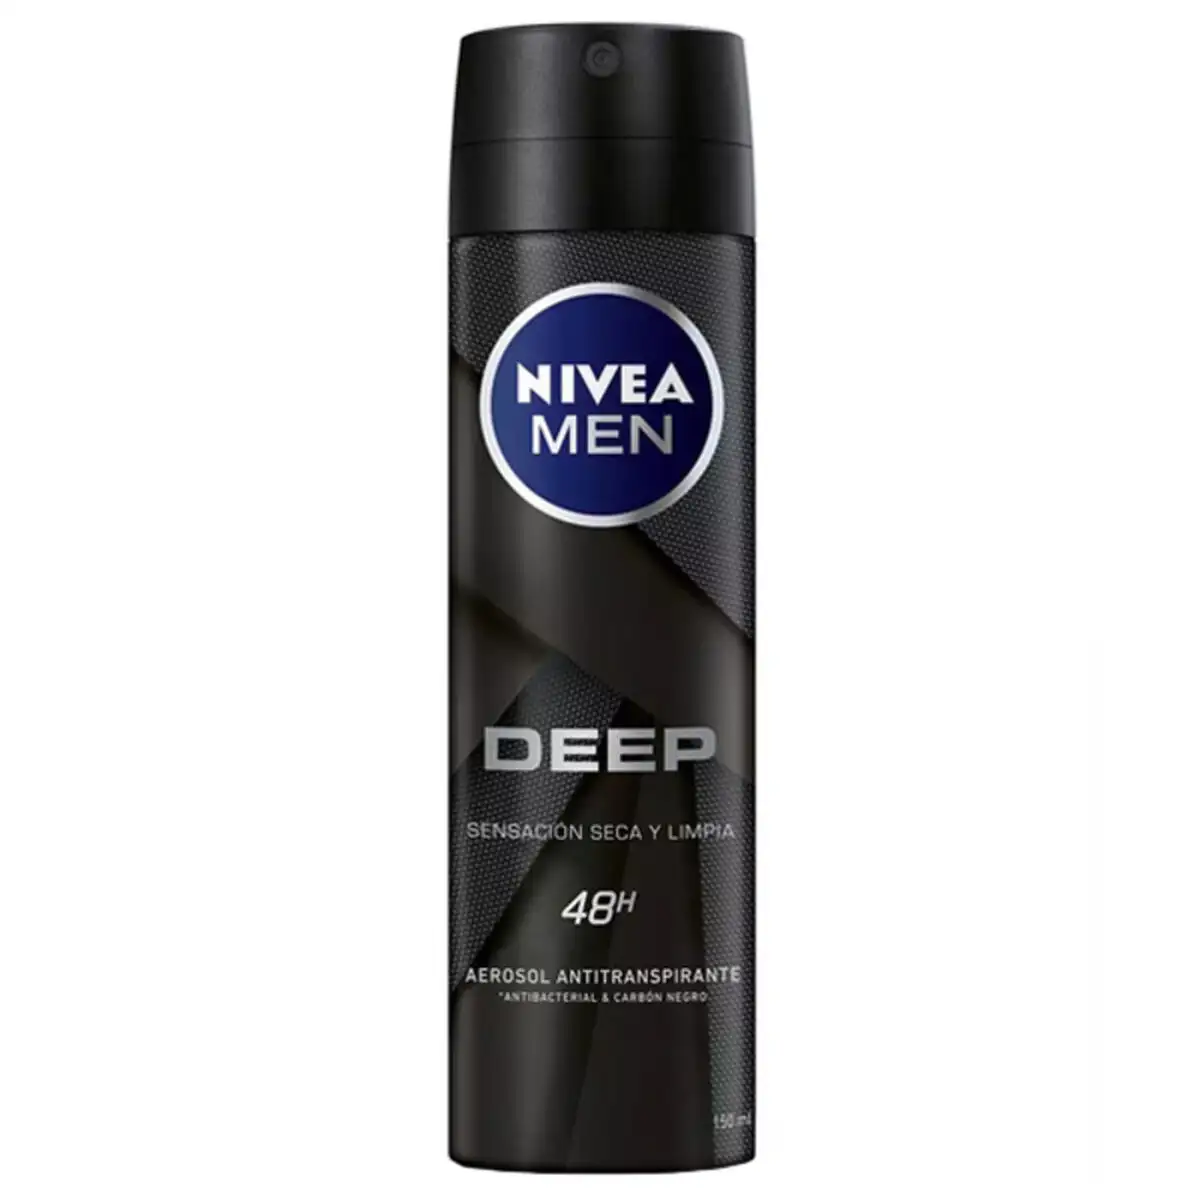 Spray deodorant men deep black carbon nivea 150 ml _4162. DIAYTAR SENEGAL - Votre Passage vers l'Éclat et la Beauté. Explorez notre boutique en ligne et trouvez des produits qui subliment votre apparence et votre espace.